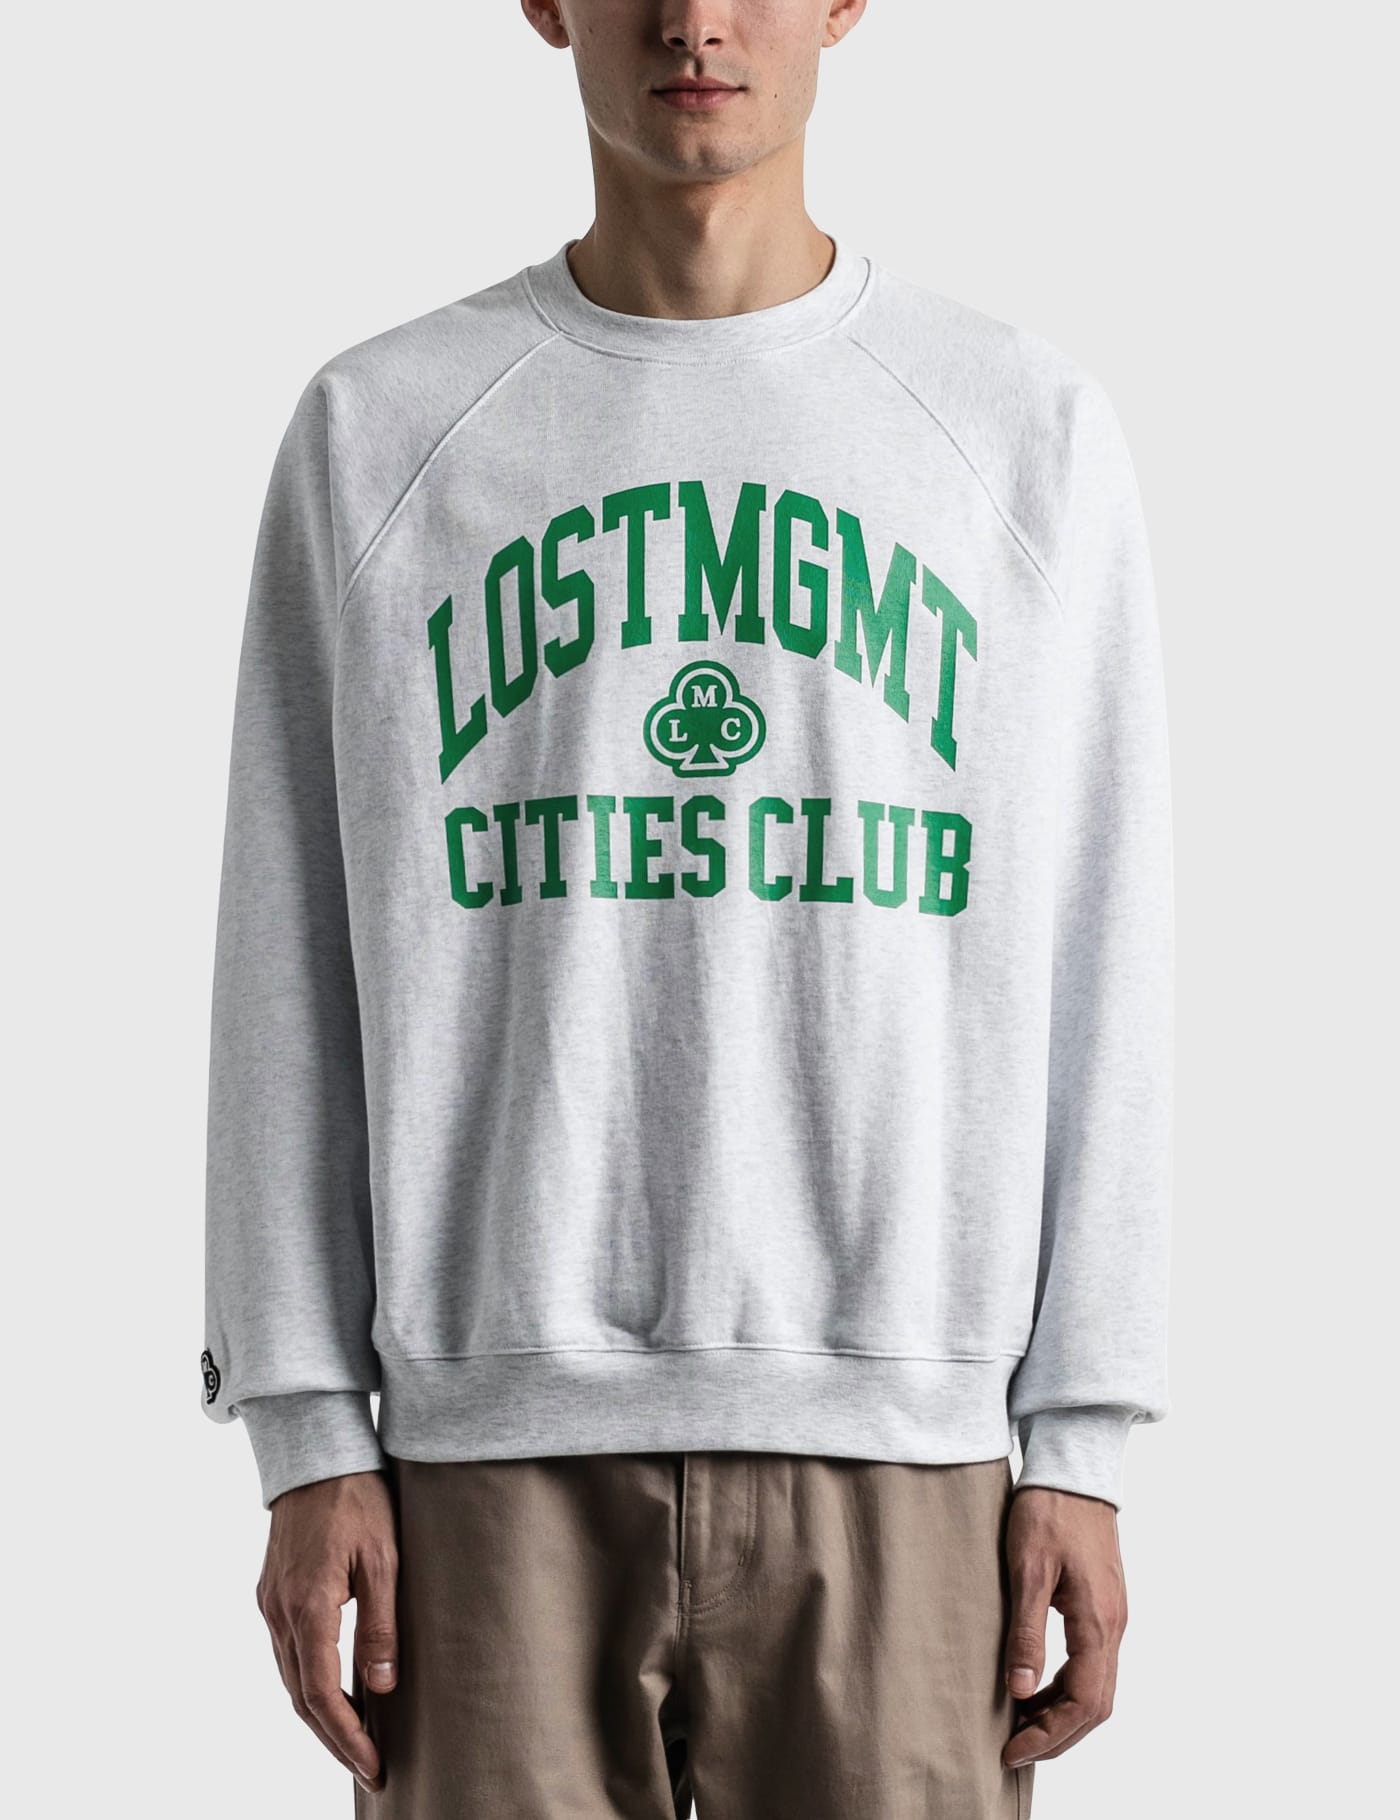 LMC - Club Athletic Raglan Sweatshirt | HBX - Globally Curated Fashion and  Lifestyle by Hypebeast